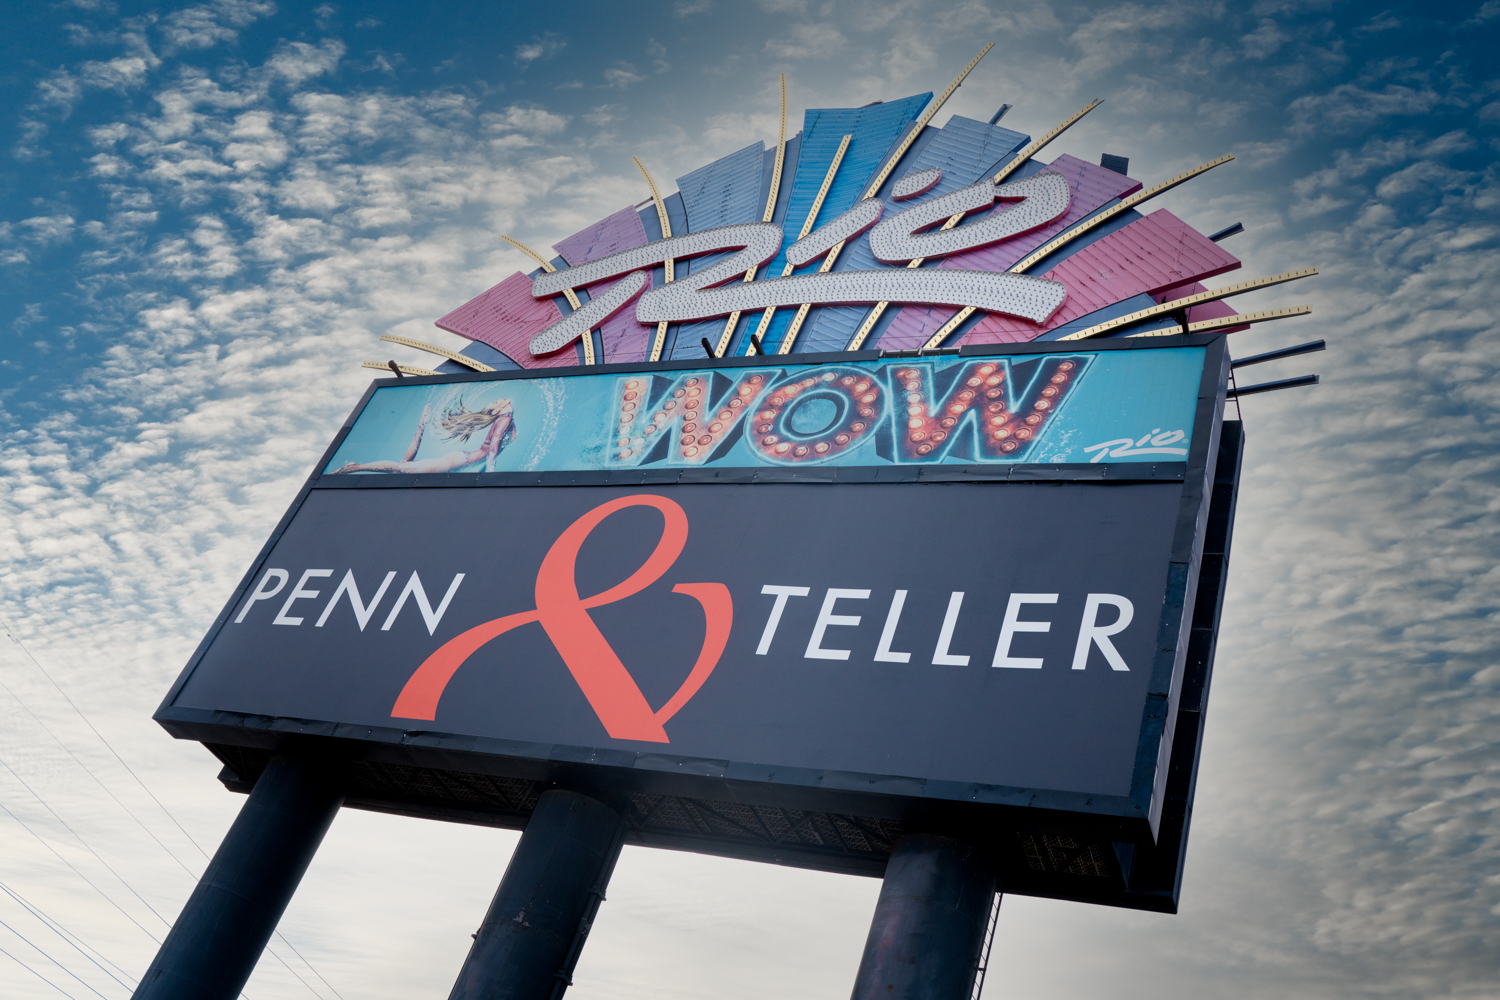 Penn & Teller